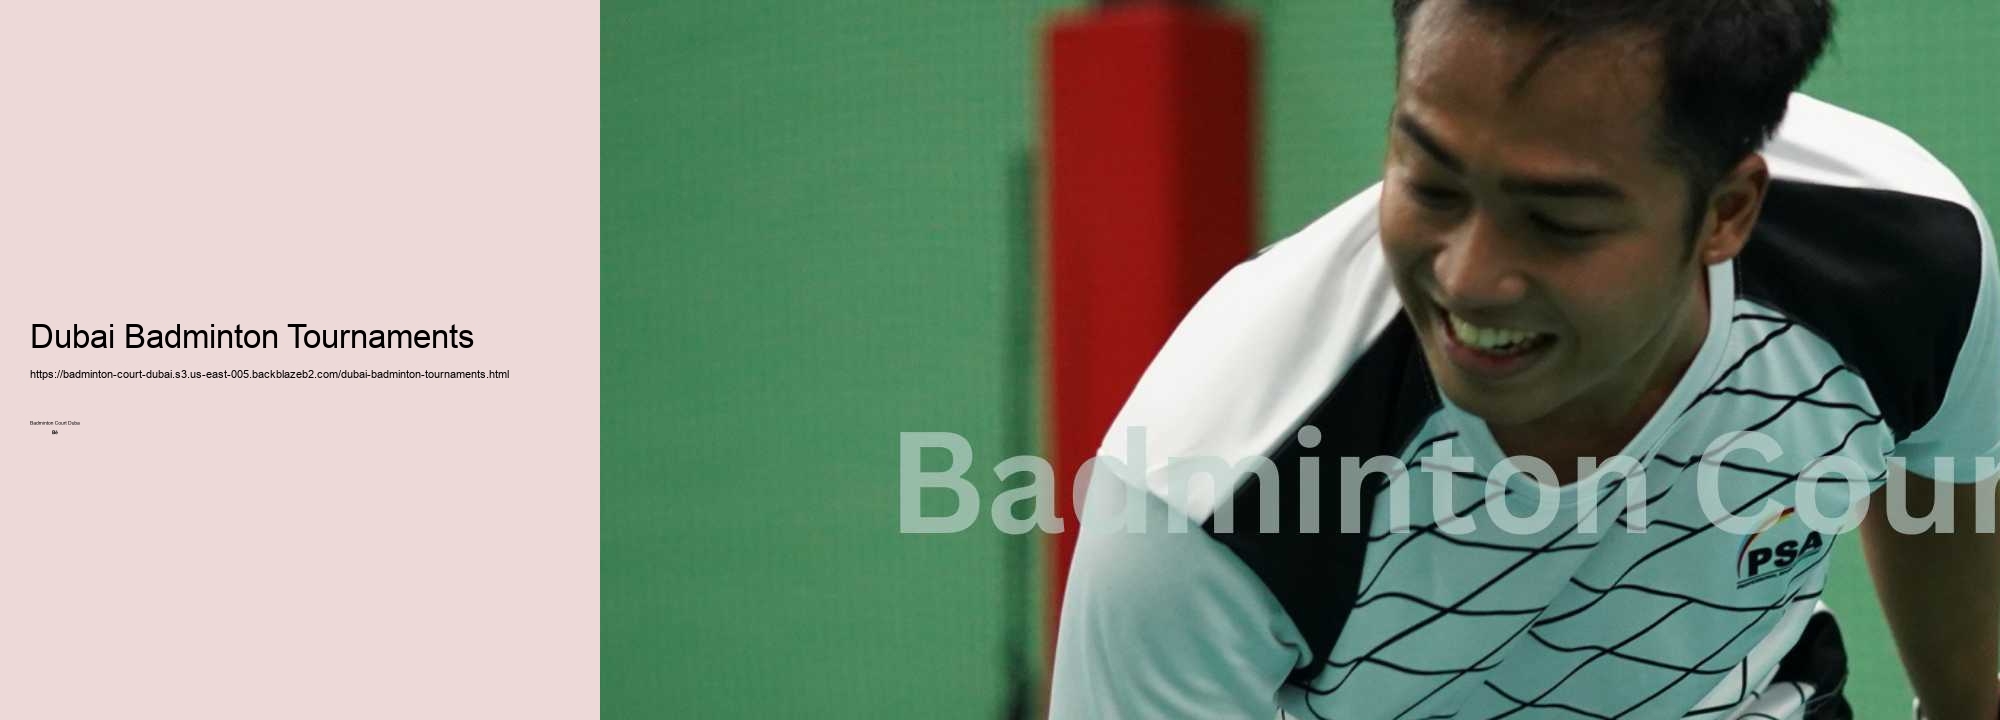 Dubai Badminton Tournaments